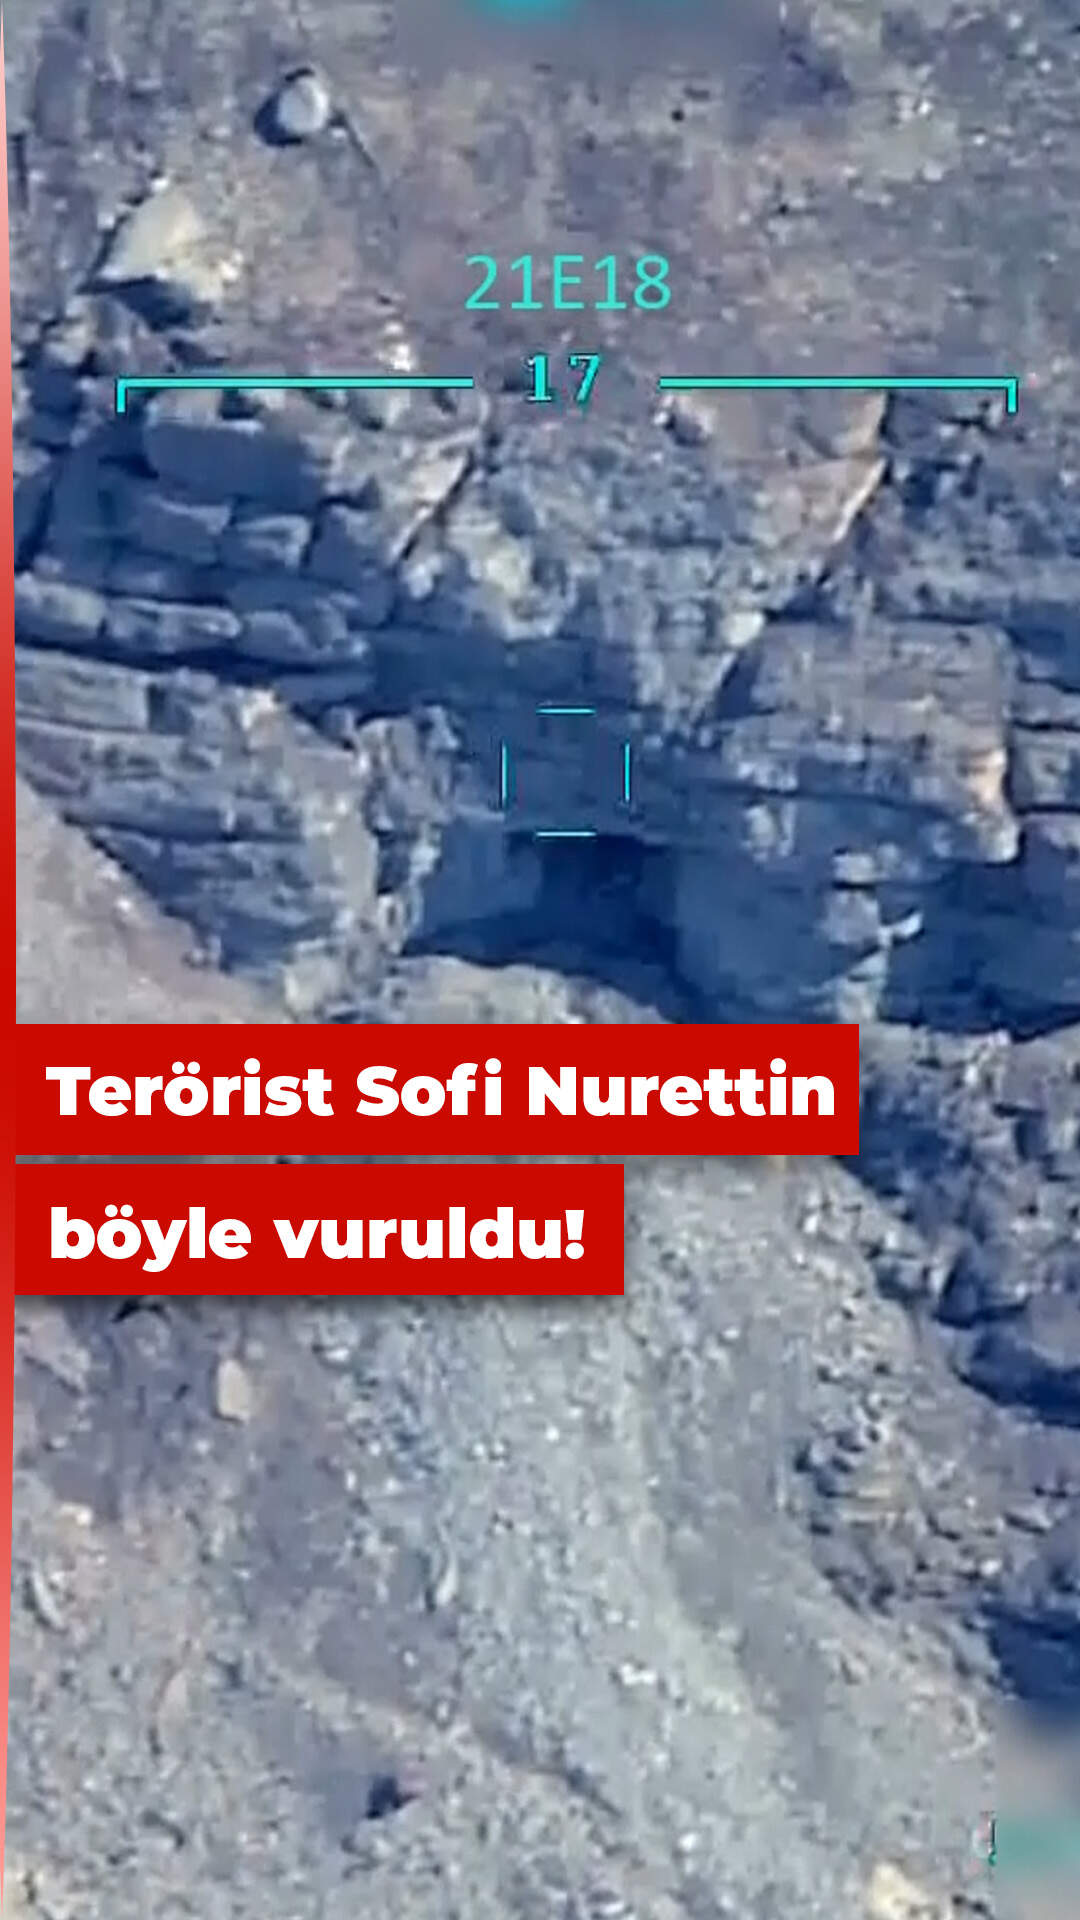 Sofi Nurettin’in öldürüldüğü operasyonun görüntüleri yayınlandı!